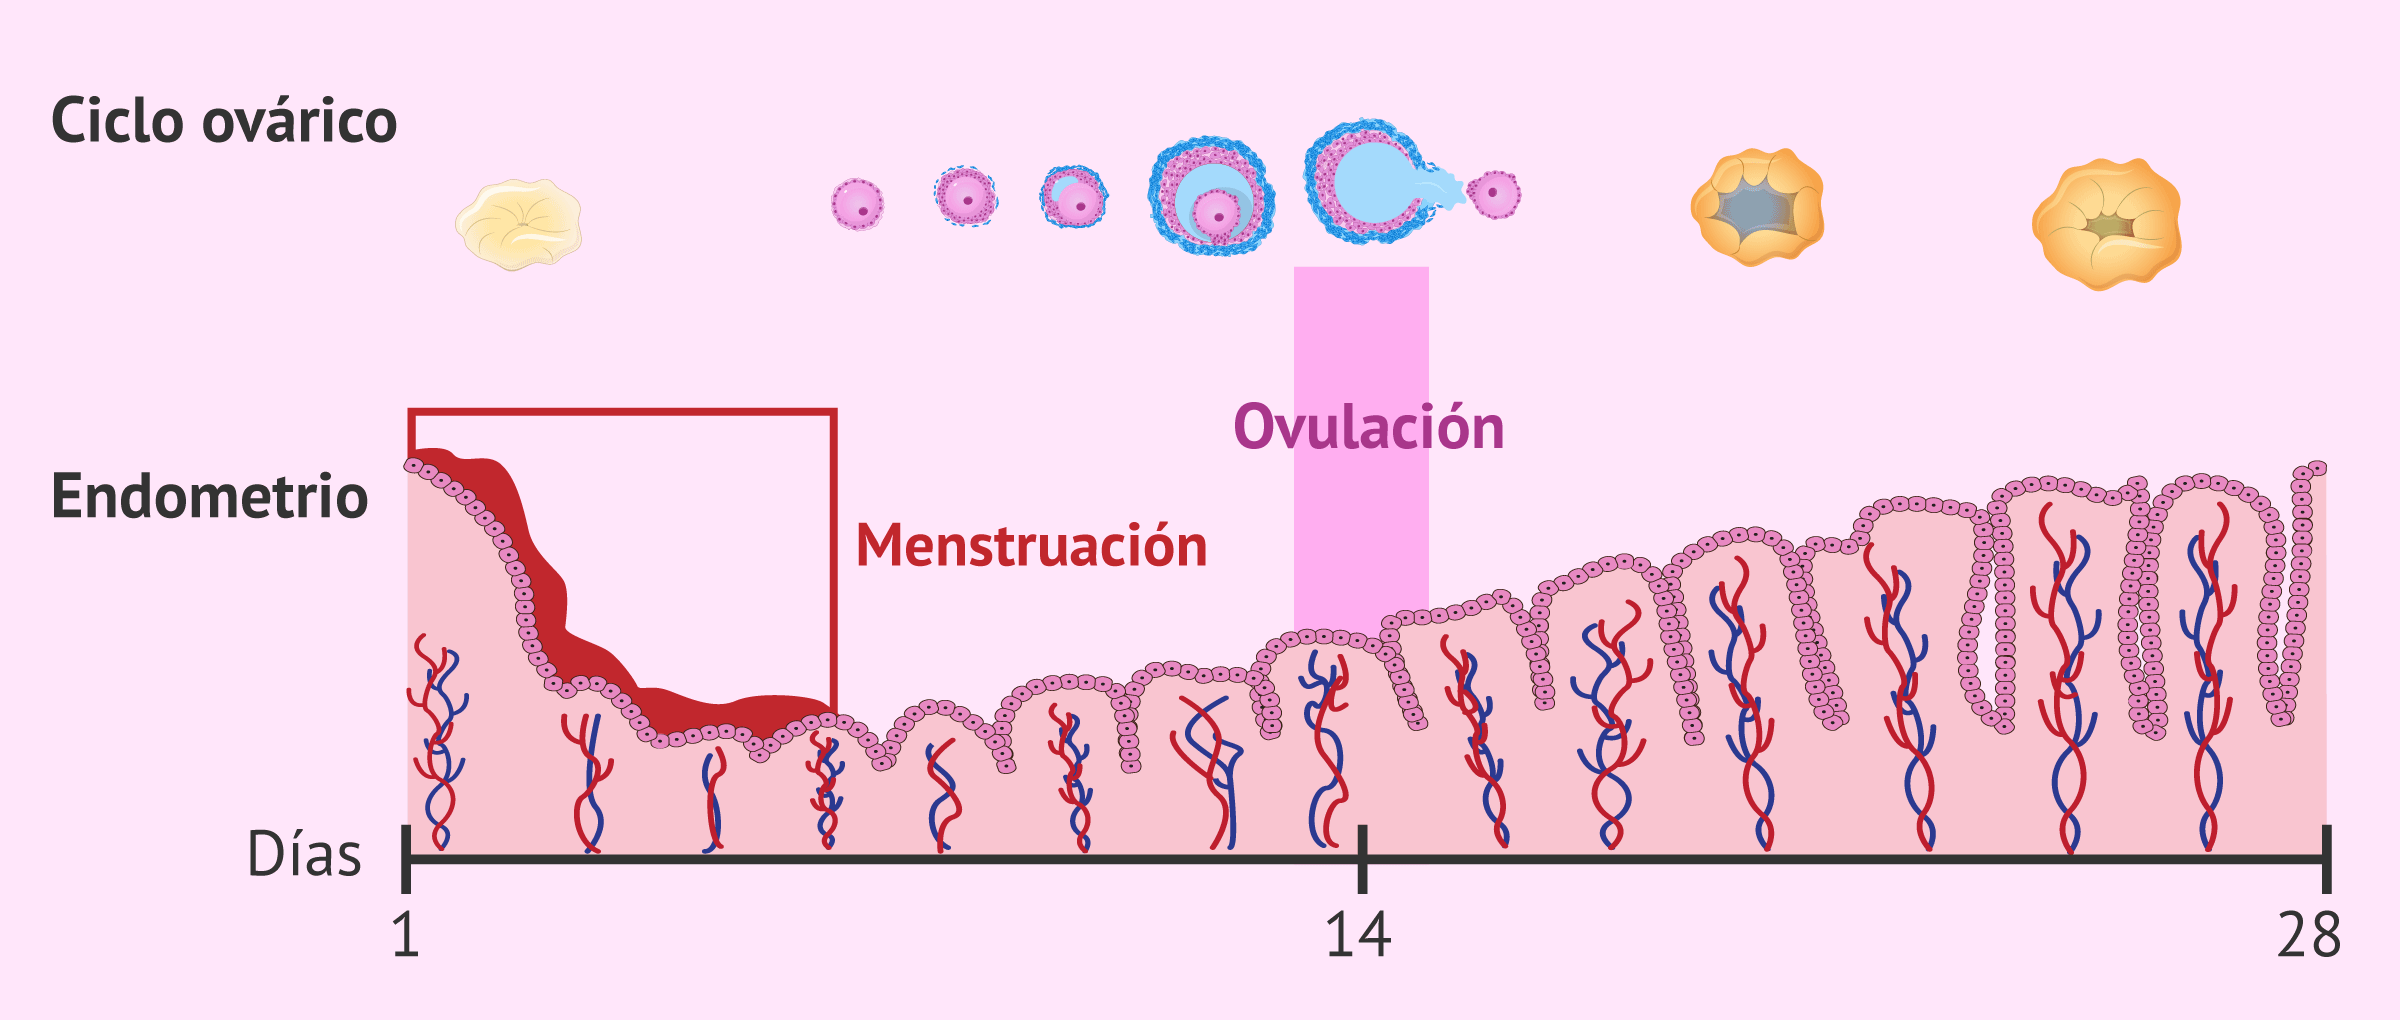 Es posible que ocurra la ovulación y la regla al mismo tiempo?